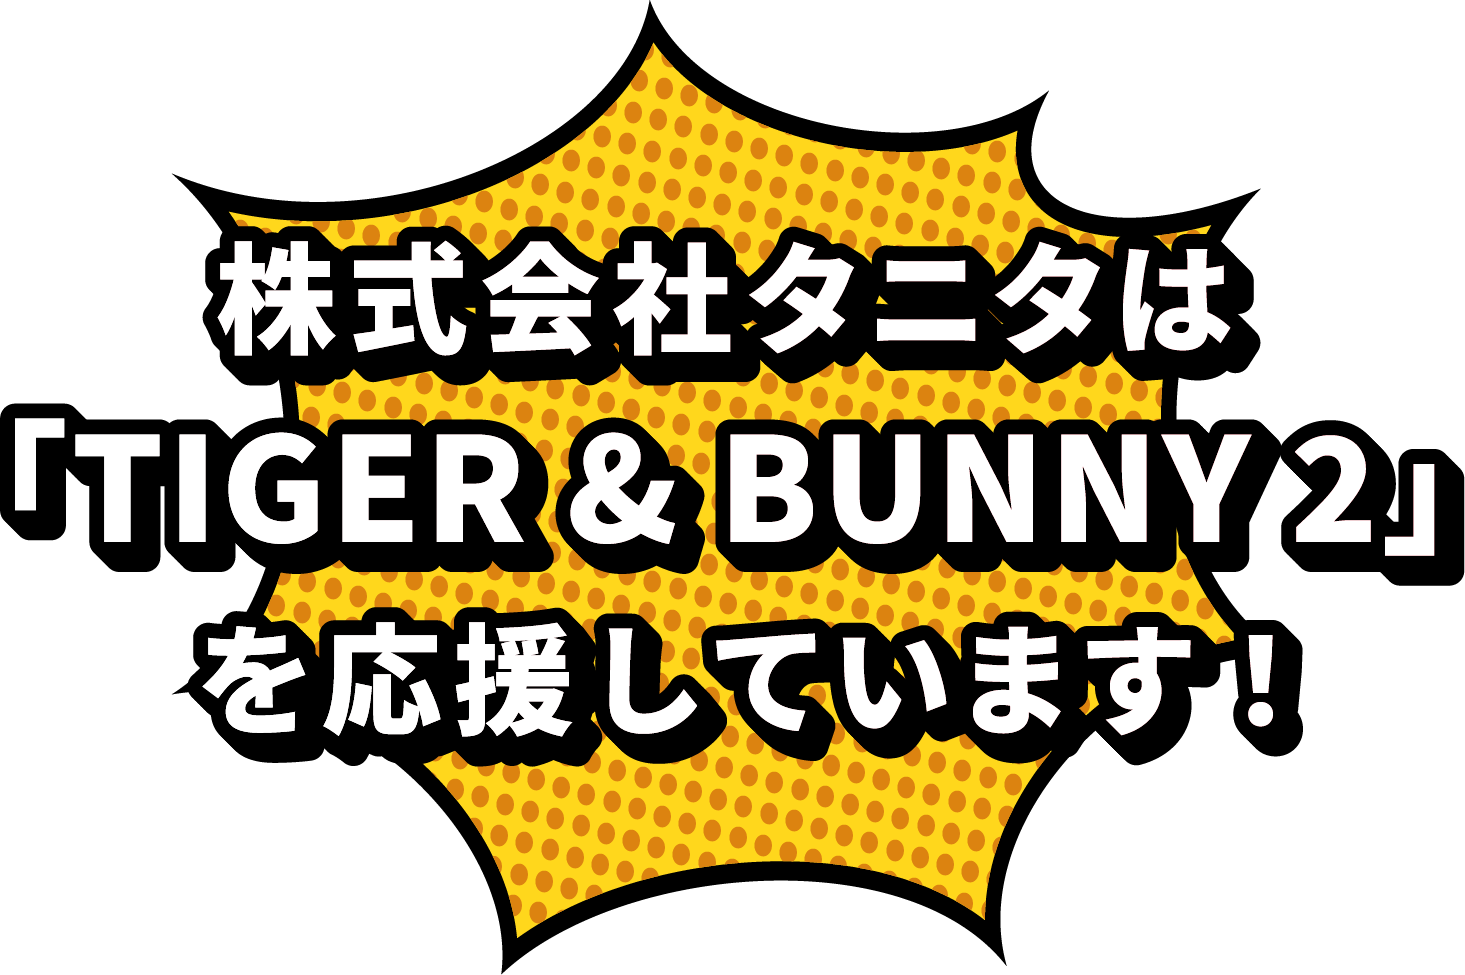 株式会社タニタは『TIGER & BUNNY 2』を応援しています！